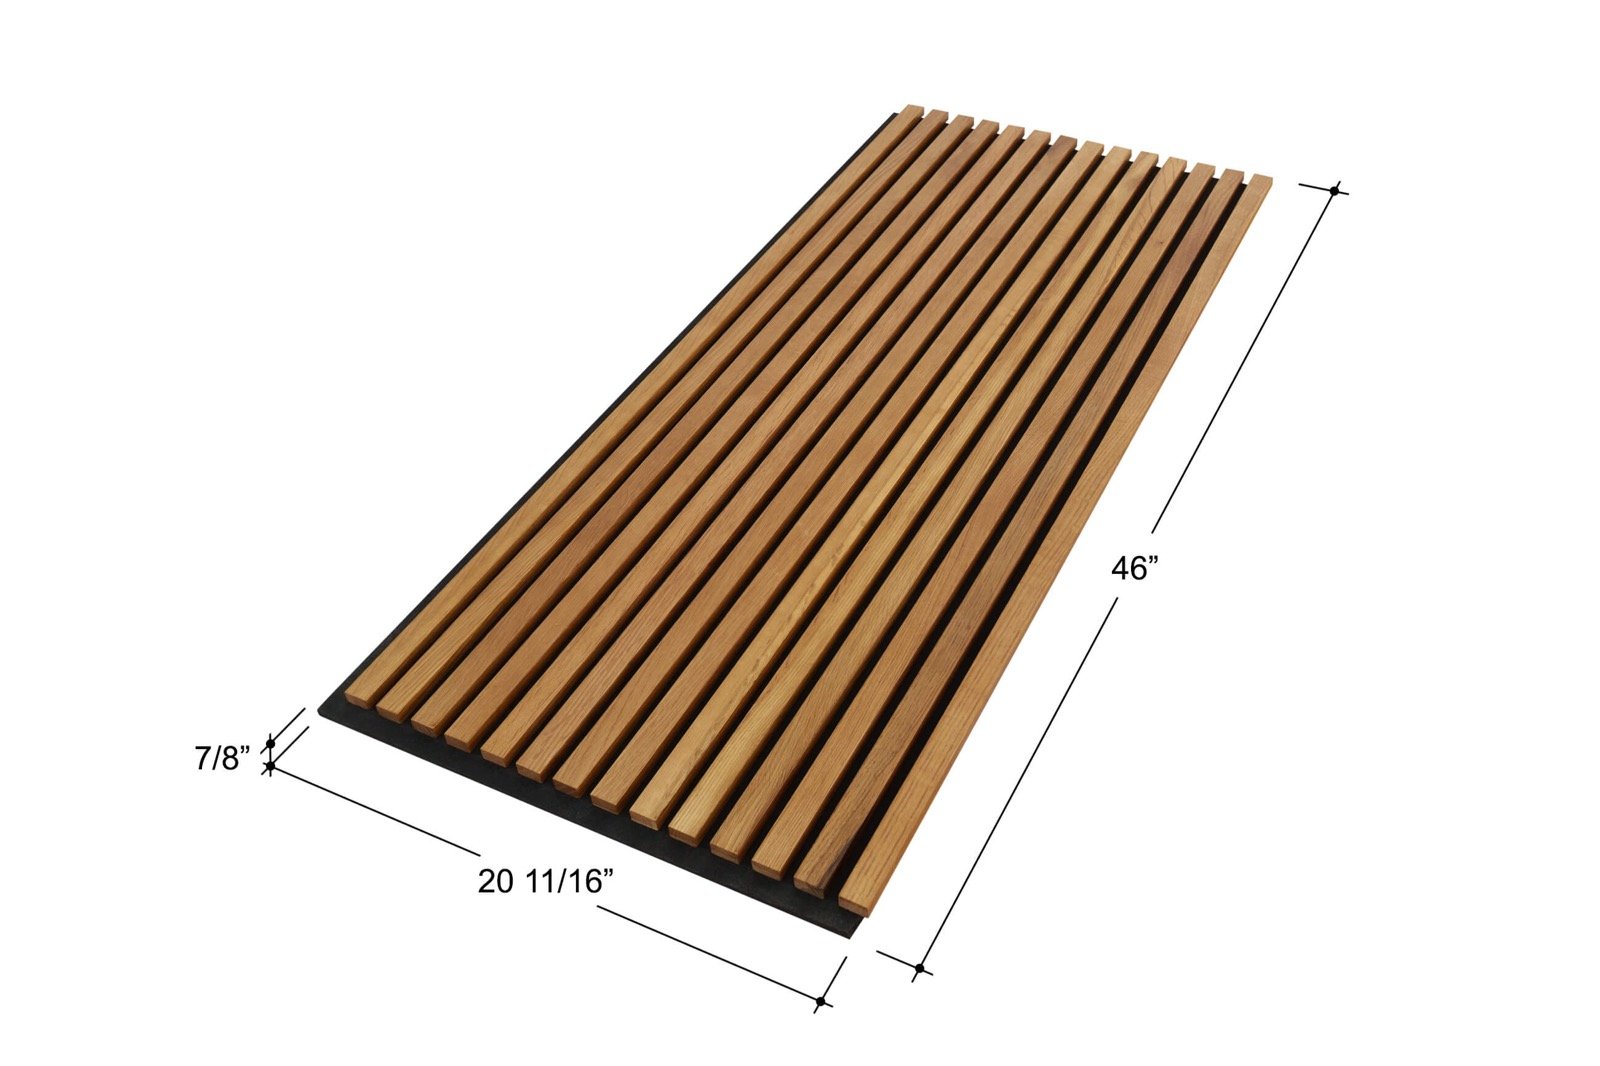 White Oak Solid Wood Slat Wall Panels - For Sale, Buy Online